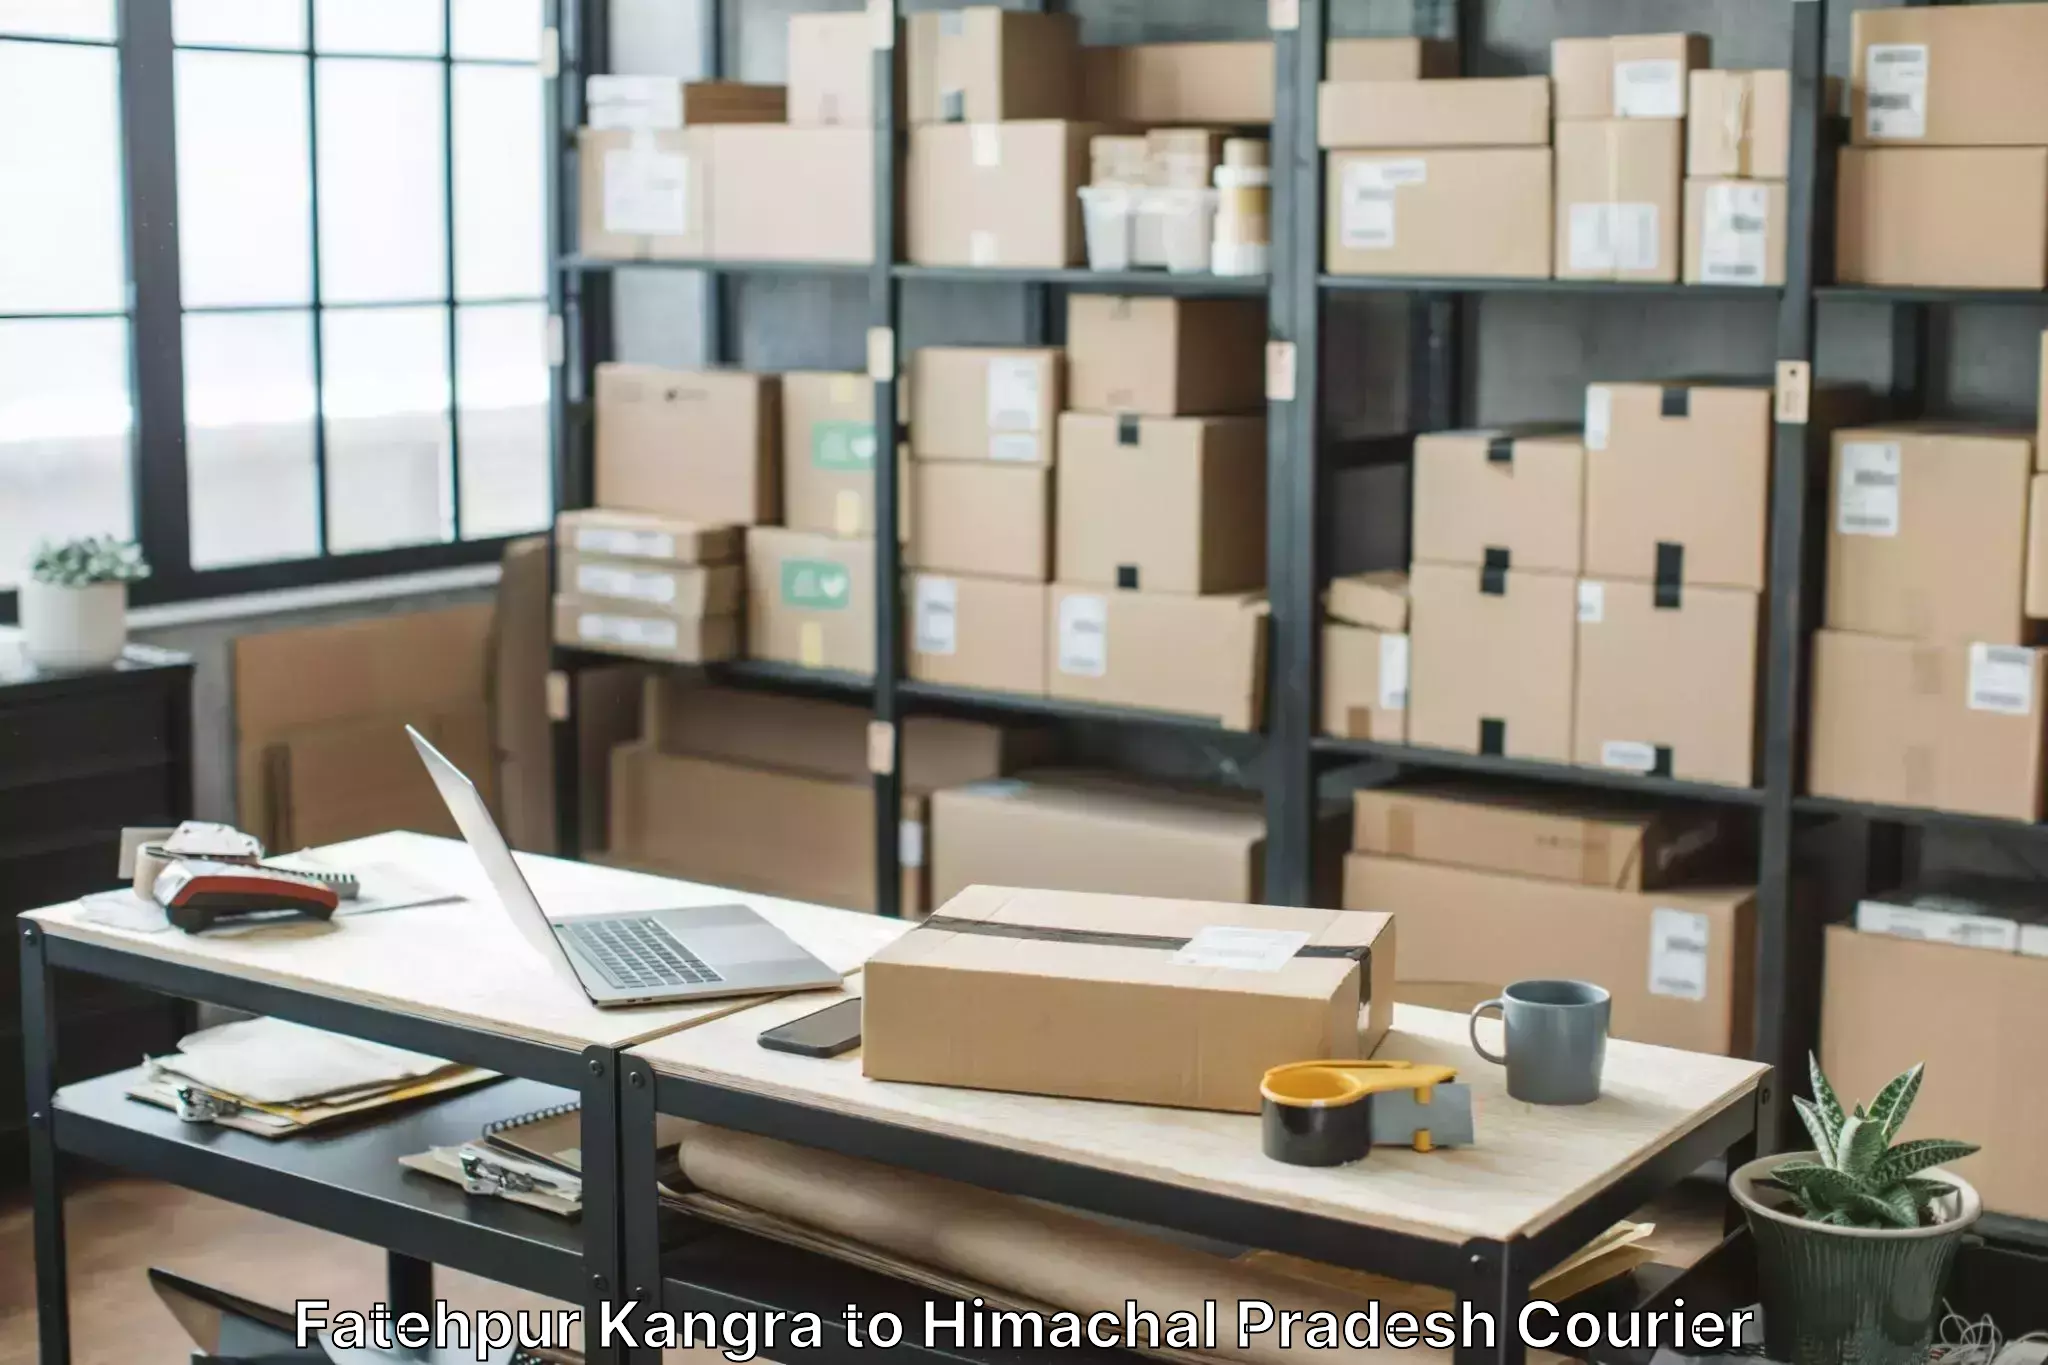 Furniture moving experts Fatehpur Kangra to Haripurdhar